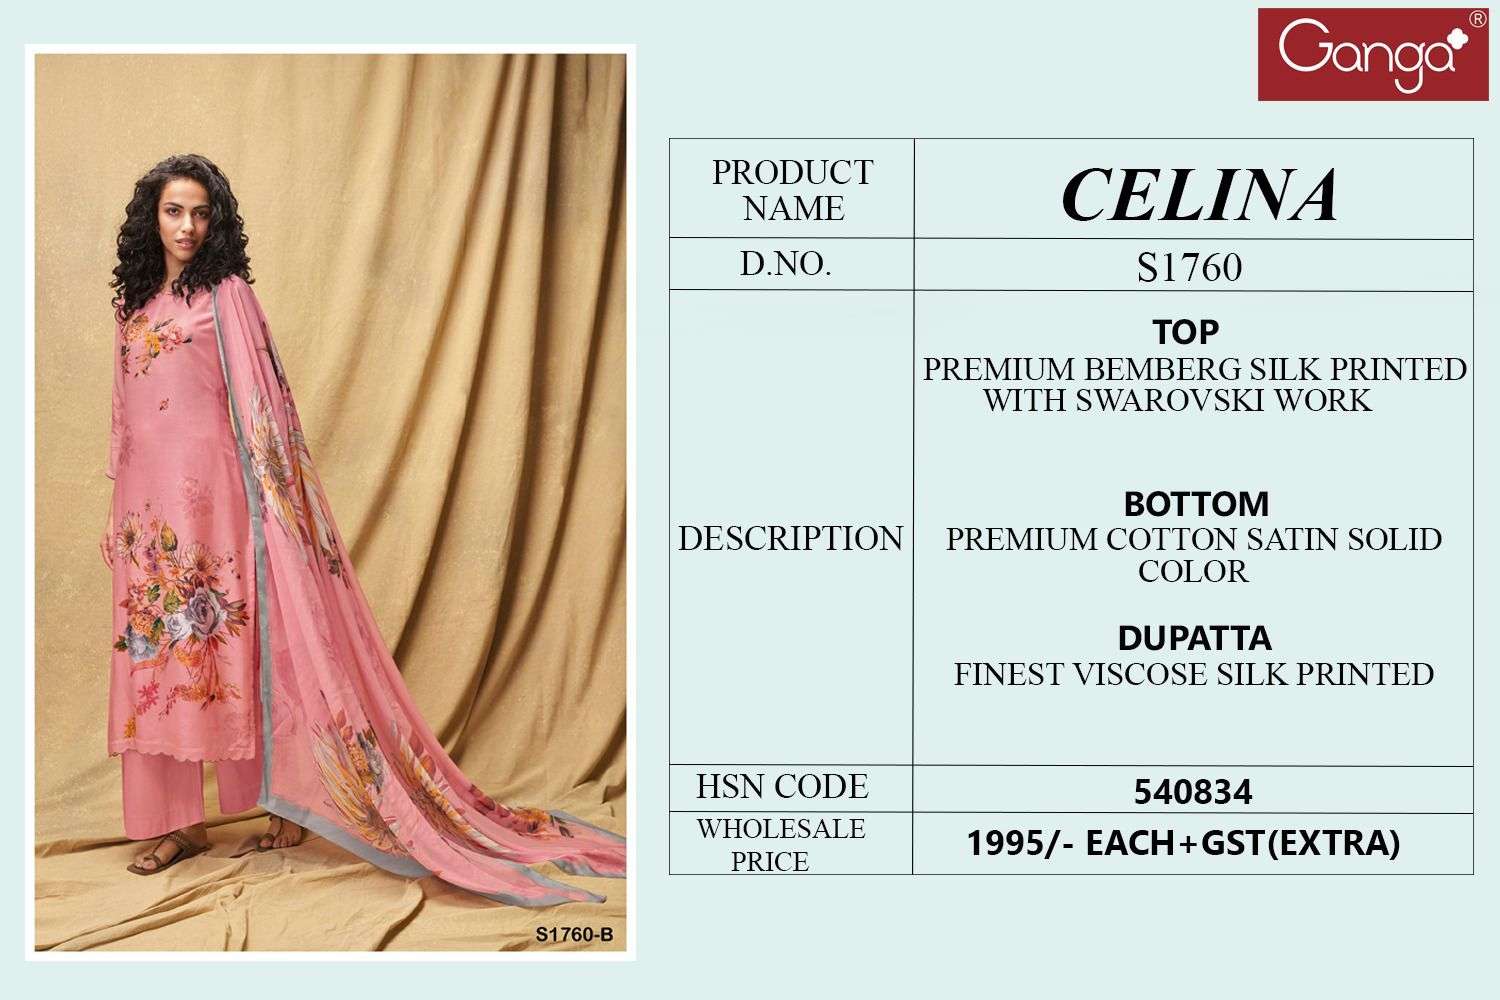 ganga celina 1760 series unstitched designer salwar kameez catalogue manufacturer surat 